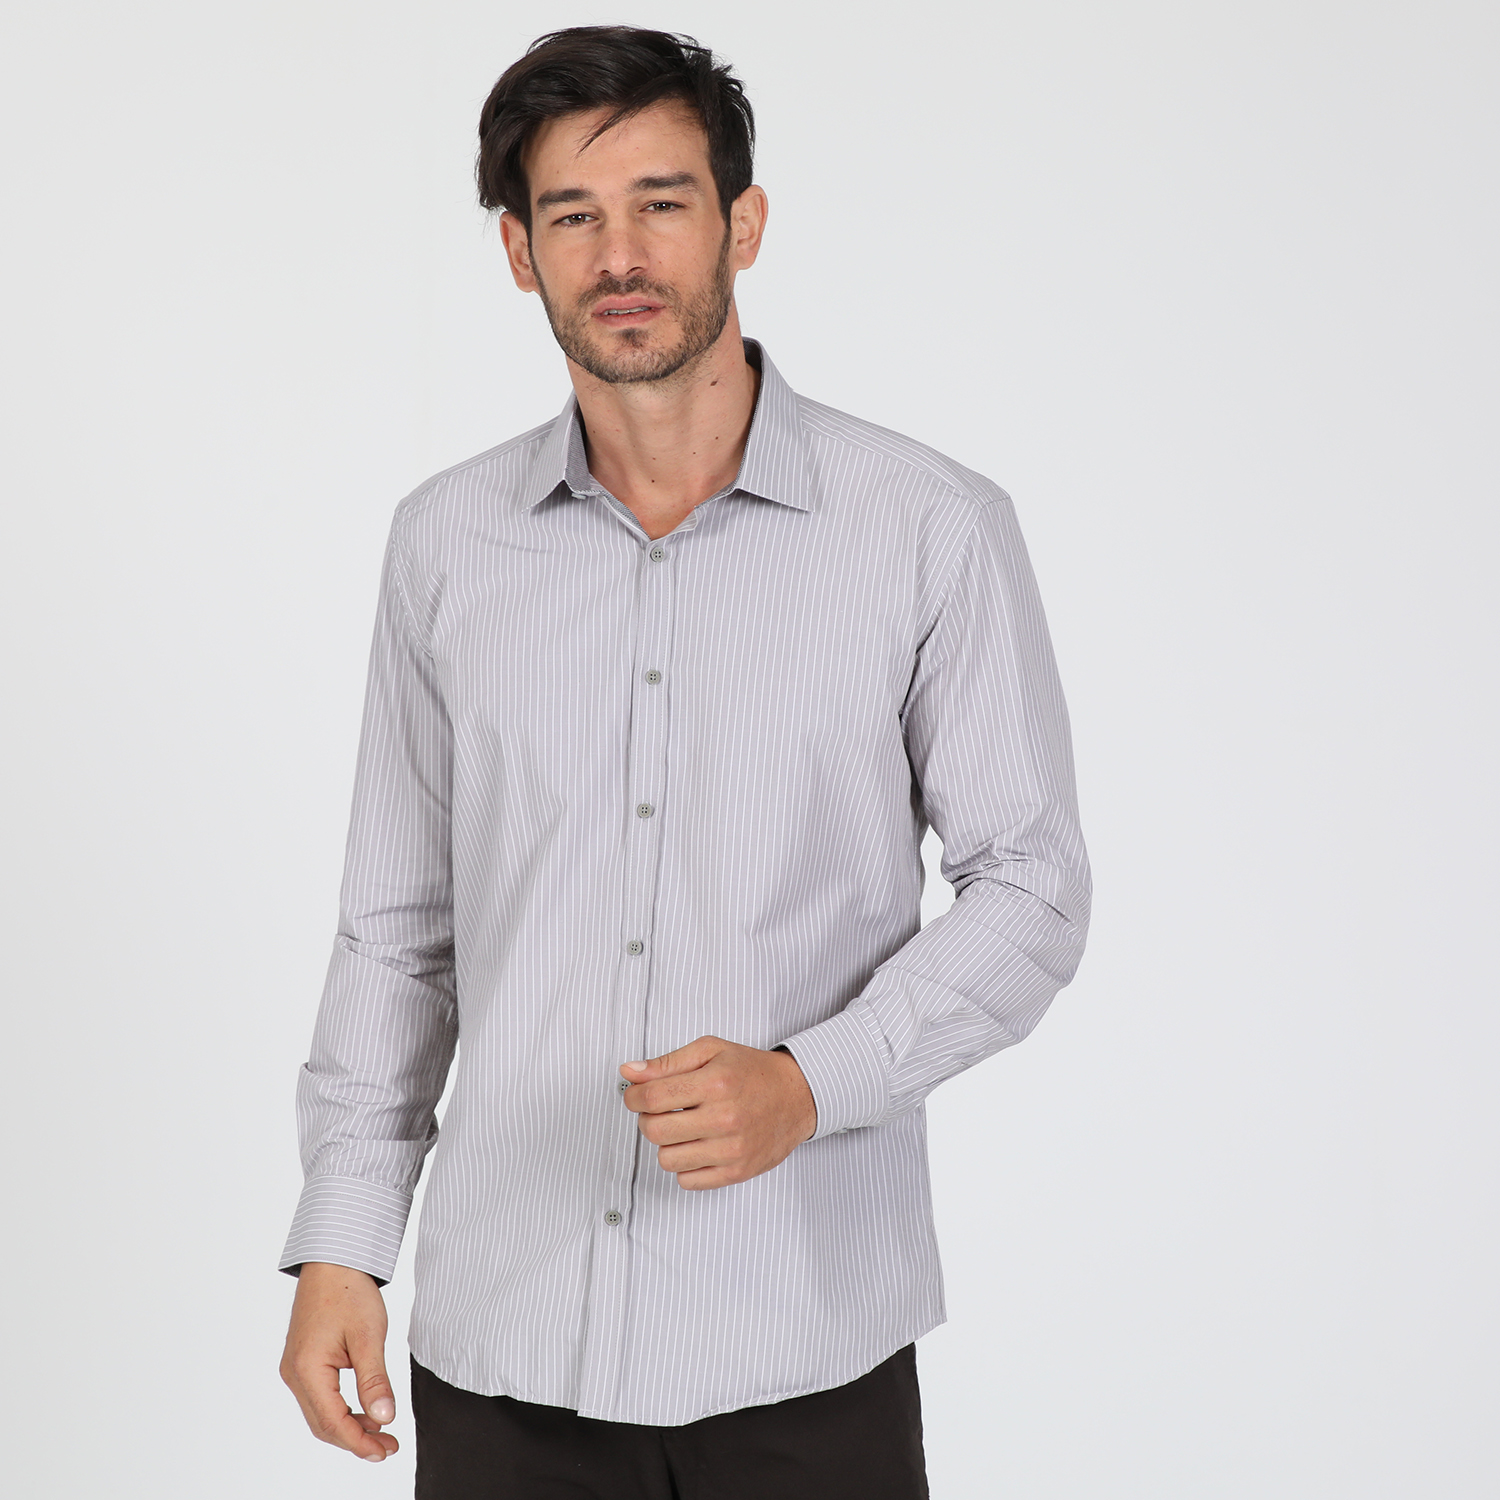 Ανδρικά/Ρούχα/Πουκάμισα/Μακρυμάνικα MARTIN & CO - Ανδρικό πουκάμισο MARTIN & CO SLIM FIT γκρι λευκό